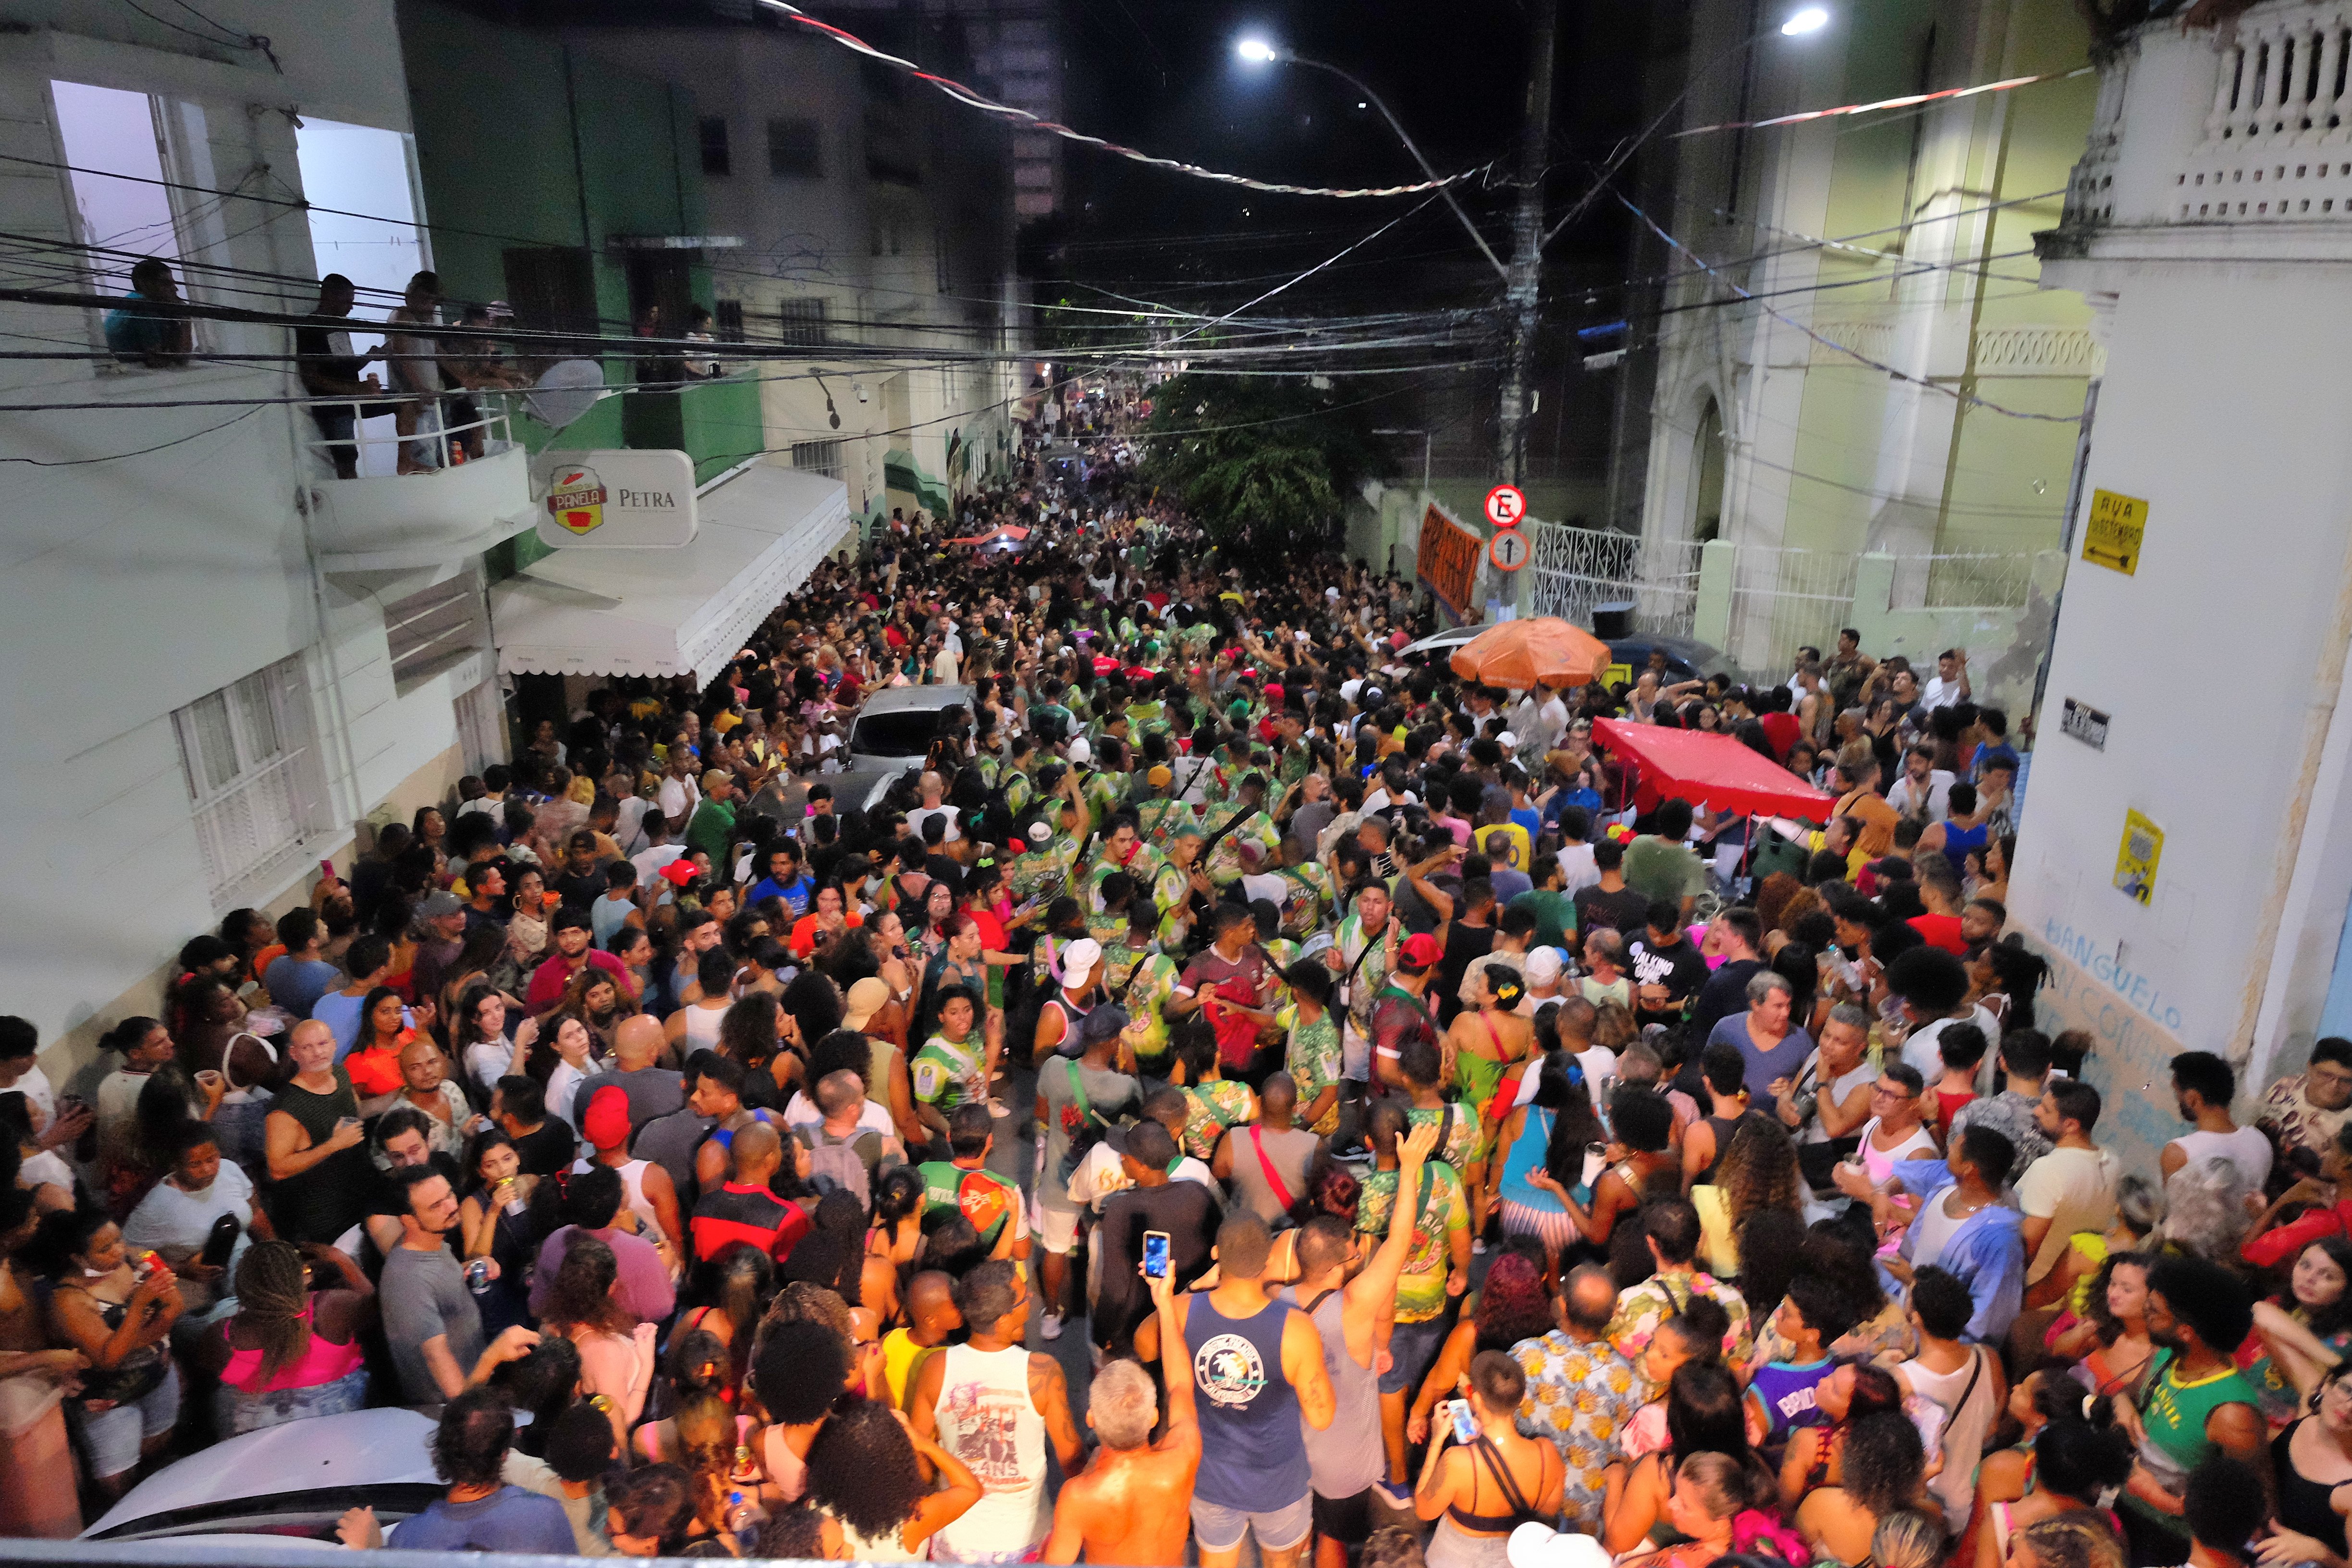 O evento pré-carnaval da escola de samba mais antiga de Vitória marca a abertura da semana dos desfiles das agremiações na Capital